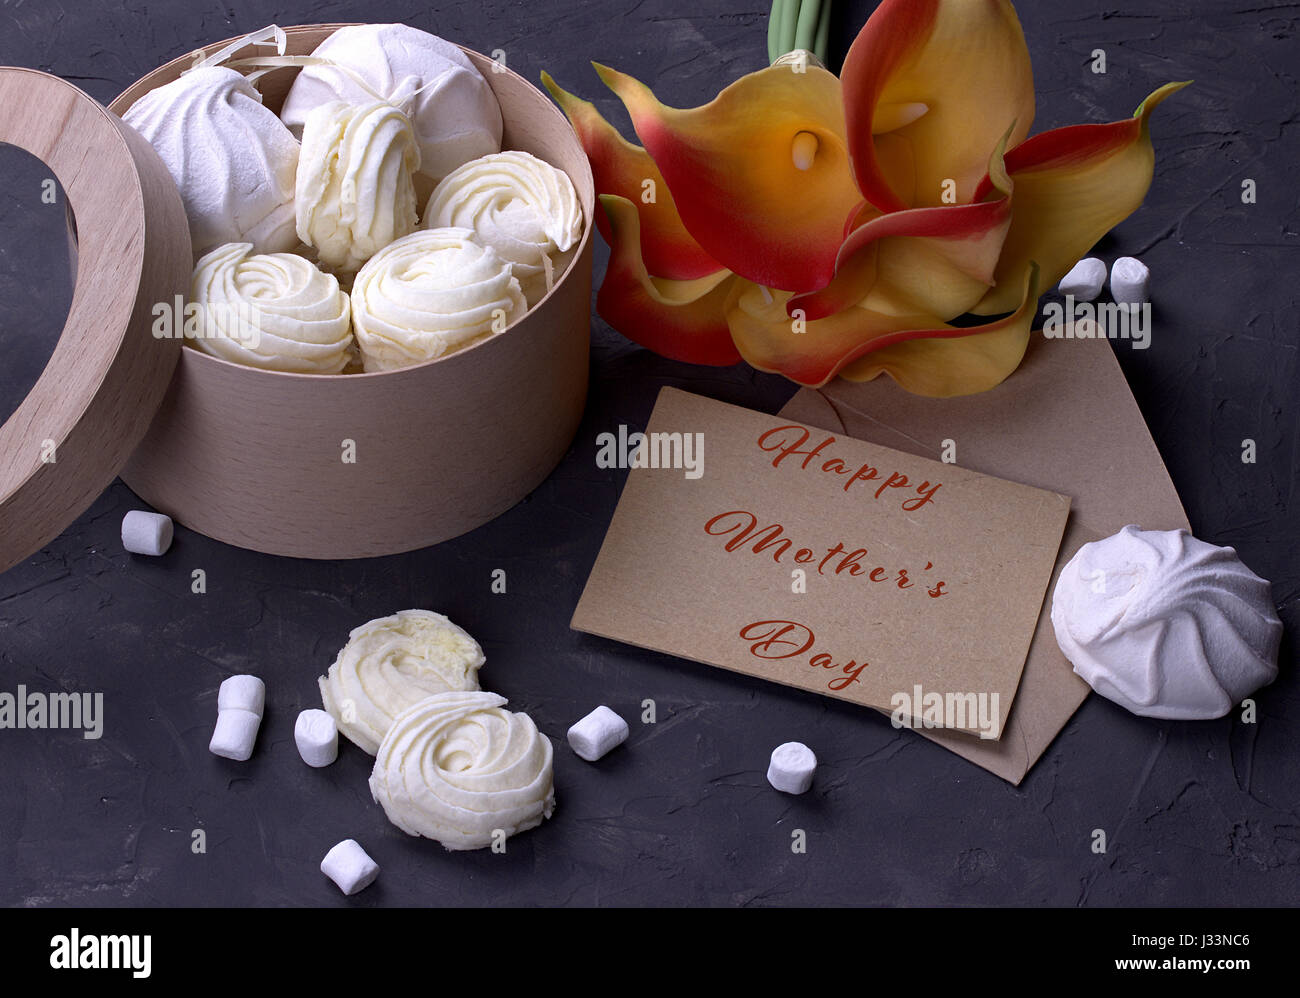 Bouquet de callas jaune rouge avec des guimauves marmelade dans une boîte ronde en bois et enveloppe avec lettrage heureux mères le background de béton gris Banque D'Images